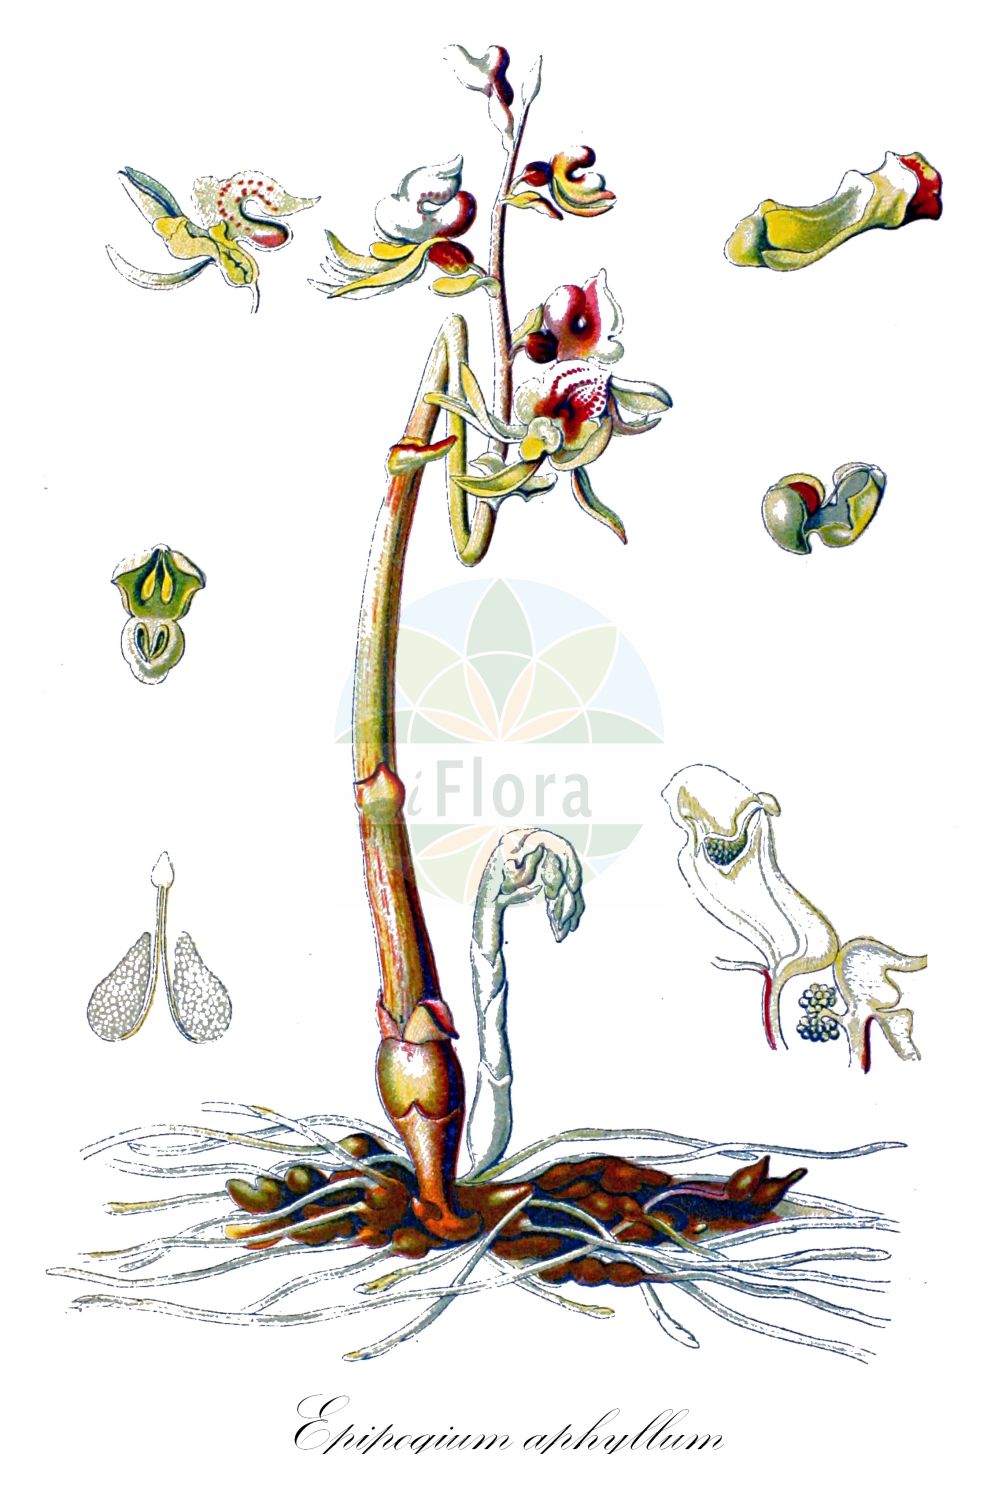 Historische Abbildung von Epipogium aphyllum (Blattloser Widerbart - Ghost Orchid). Das Bild zeigt Blatt, Bluete, Frucht und Same. ---- Historical Drawing of Epipogium aphyllum (Blattloser Widerbart - Ghost Orchid). The image is showing leaf, flower, fruit and seed.(Epipogium aphyllum,Blattloser Widerbart,Ghost Orchid,Epipactis epipogium,Epipogium aphyllum,Epipogium epipogium,Epipogium generalis,Epipogium gmelinii,Limodorum epipogium,Orchis aphylla,Satyrium epipogium,Serapias epigogium,Blattloser Widerbart,Ghost Orchid,Leafless Epipogium,Spurred Coral-root,Epipogium,Widerbart,Ghost Orchid,Orchidaceae,Knabenkrautgewächse,Orchid family,Blatt,Bluete,Frucht,Same,leaf,flower,fruit,seed,Schulze (1892-1894))